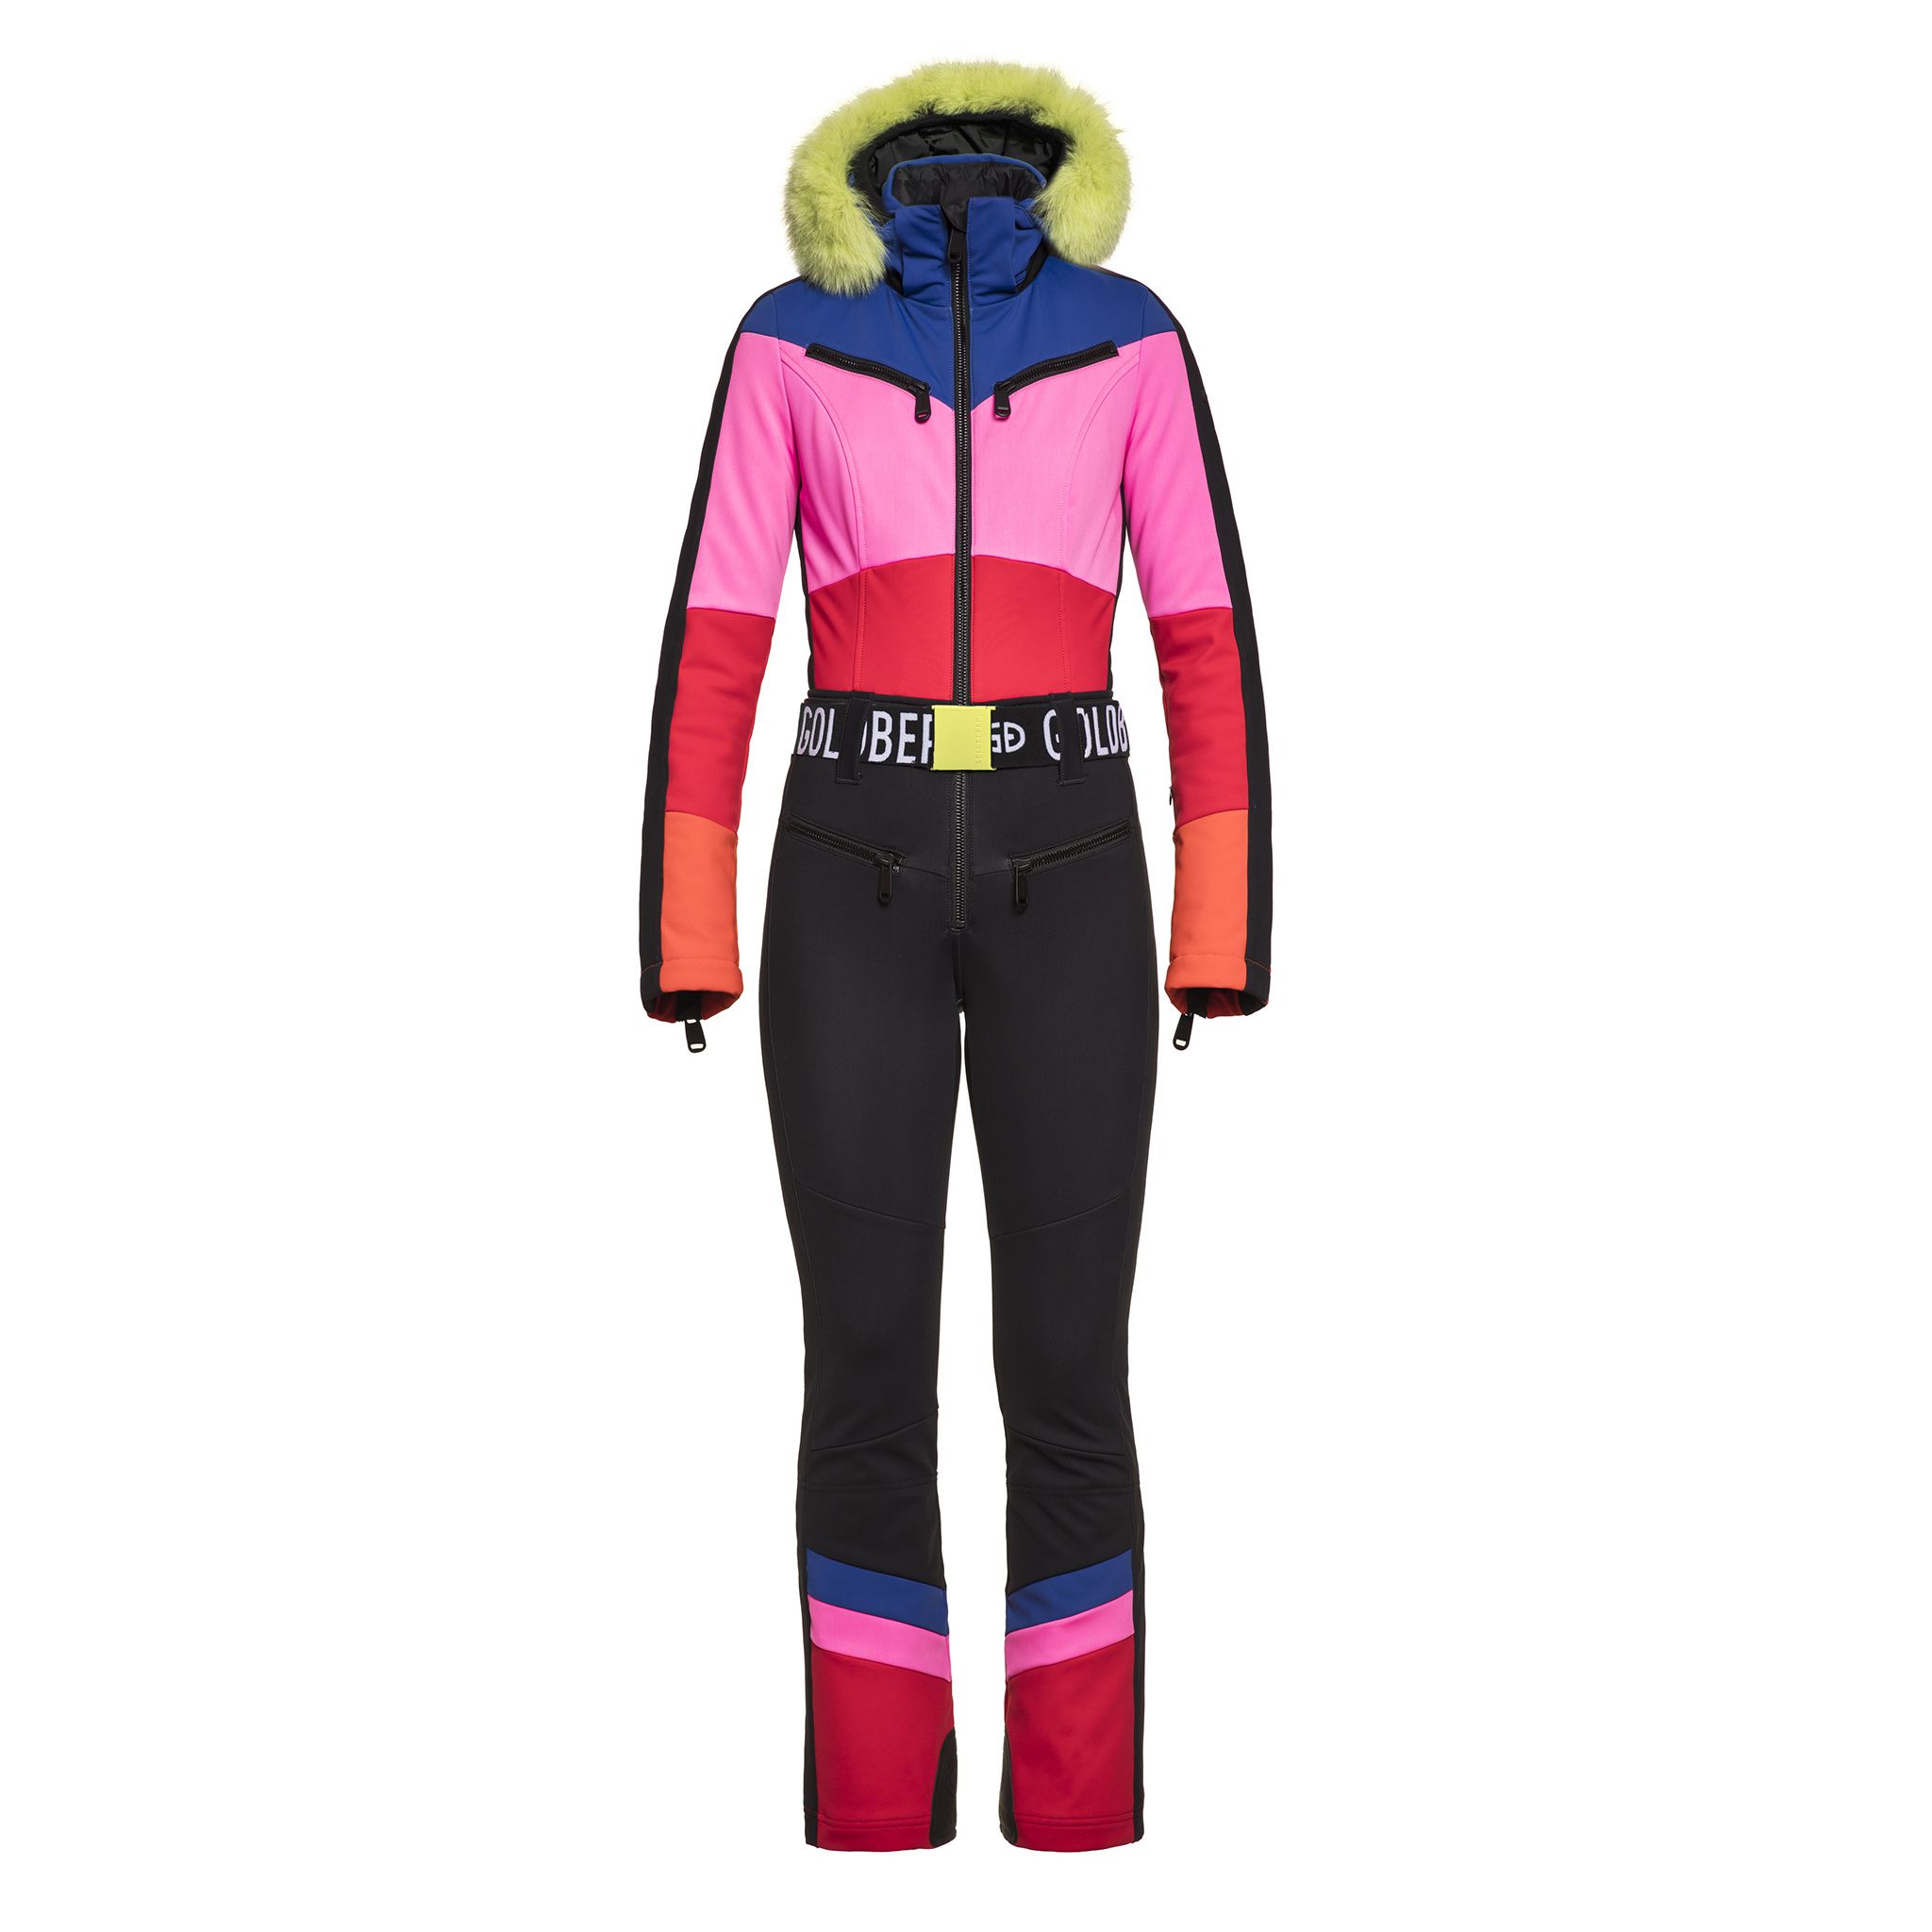 Geci Ski & Snow -  goldbergh PEARL Jumpsuit Limited Edition